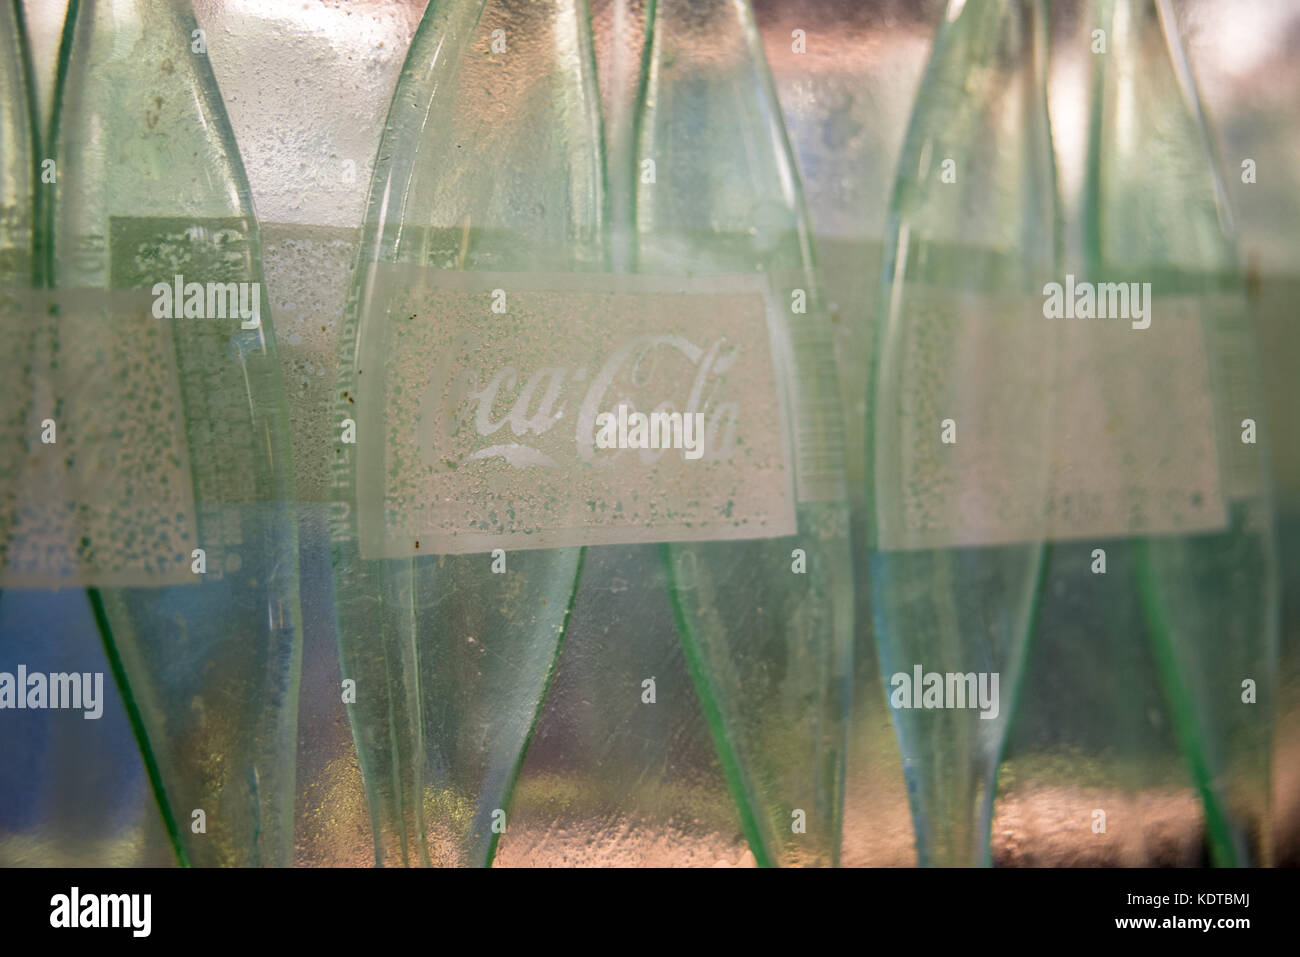 Dettaglio artigianalmente e apparecchio di illuminazione creato da riutilizzare la coca-cola bottiglie dal vetro artista kathleen piastra per Pulcino-fil-a. (Usa) Foto Stock